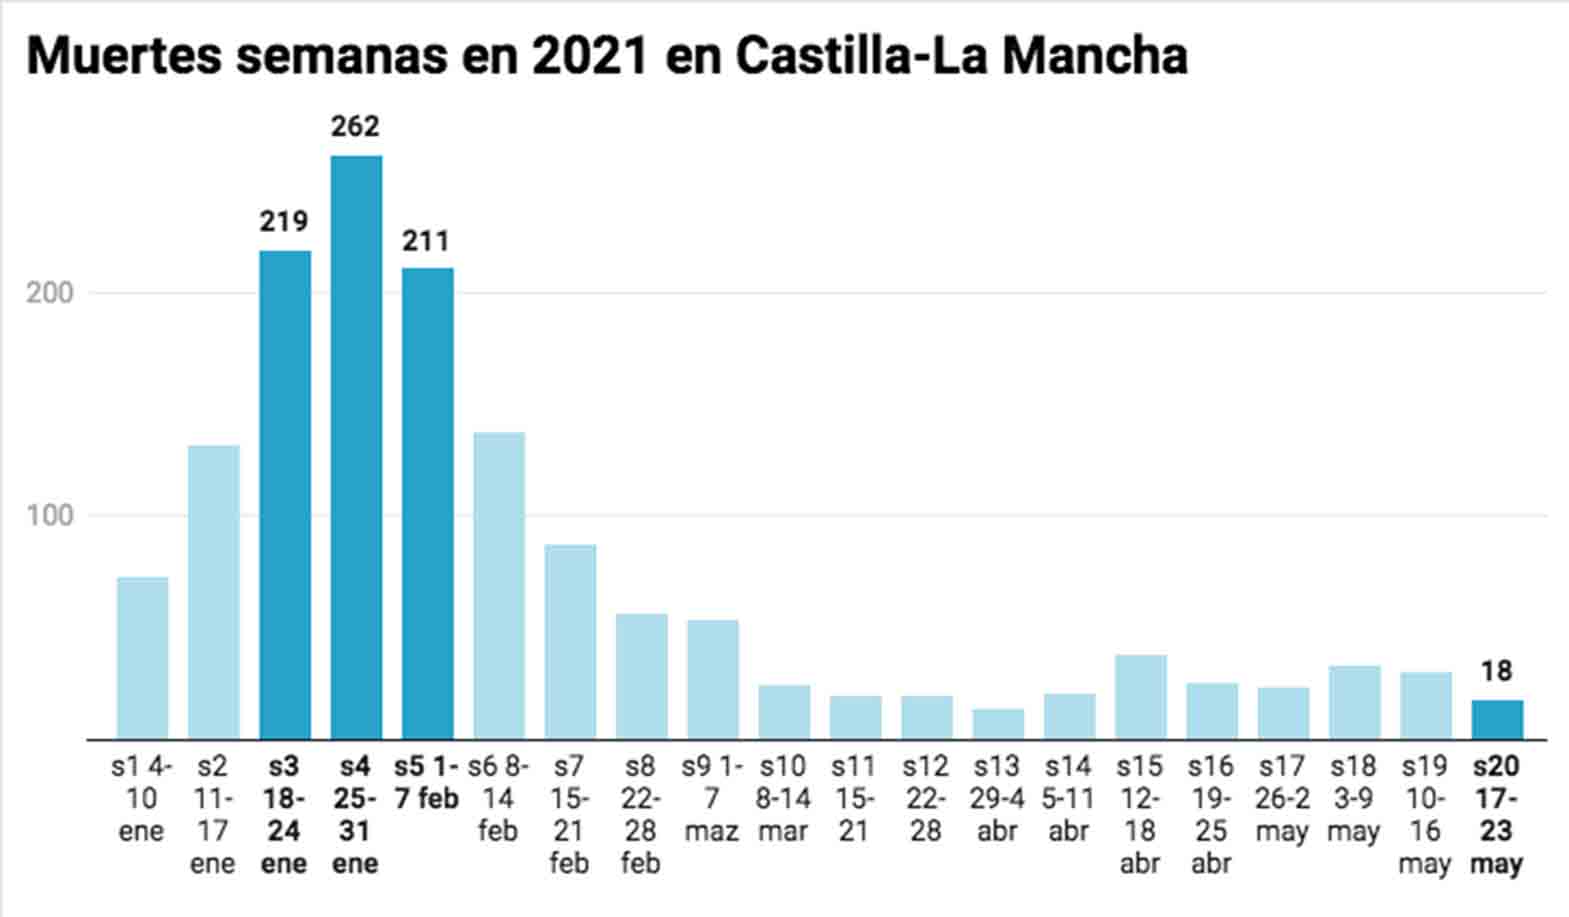 Evolución de las muertes semanales en 2021 en Castilla-La Mancha.